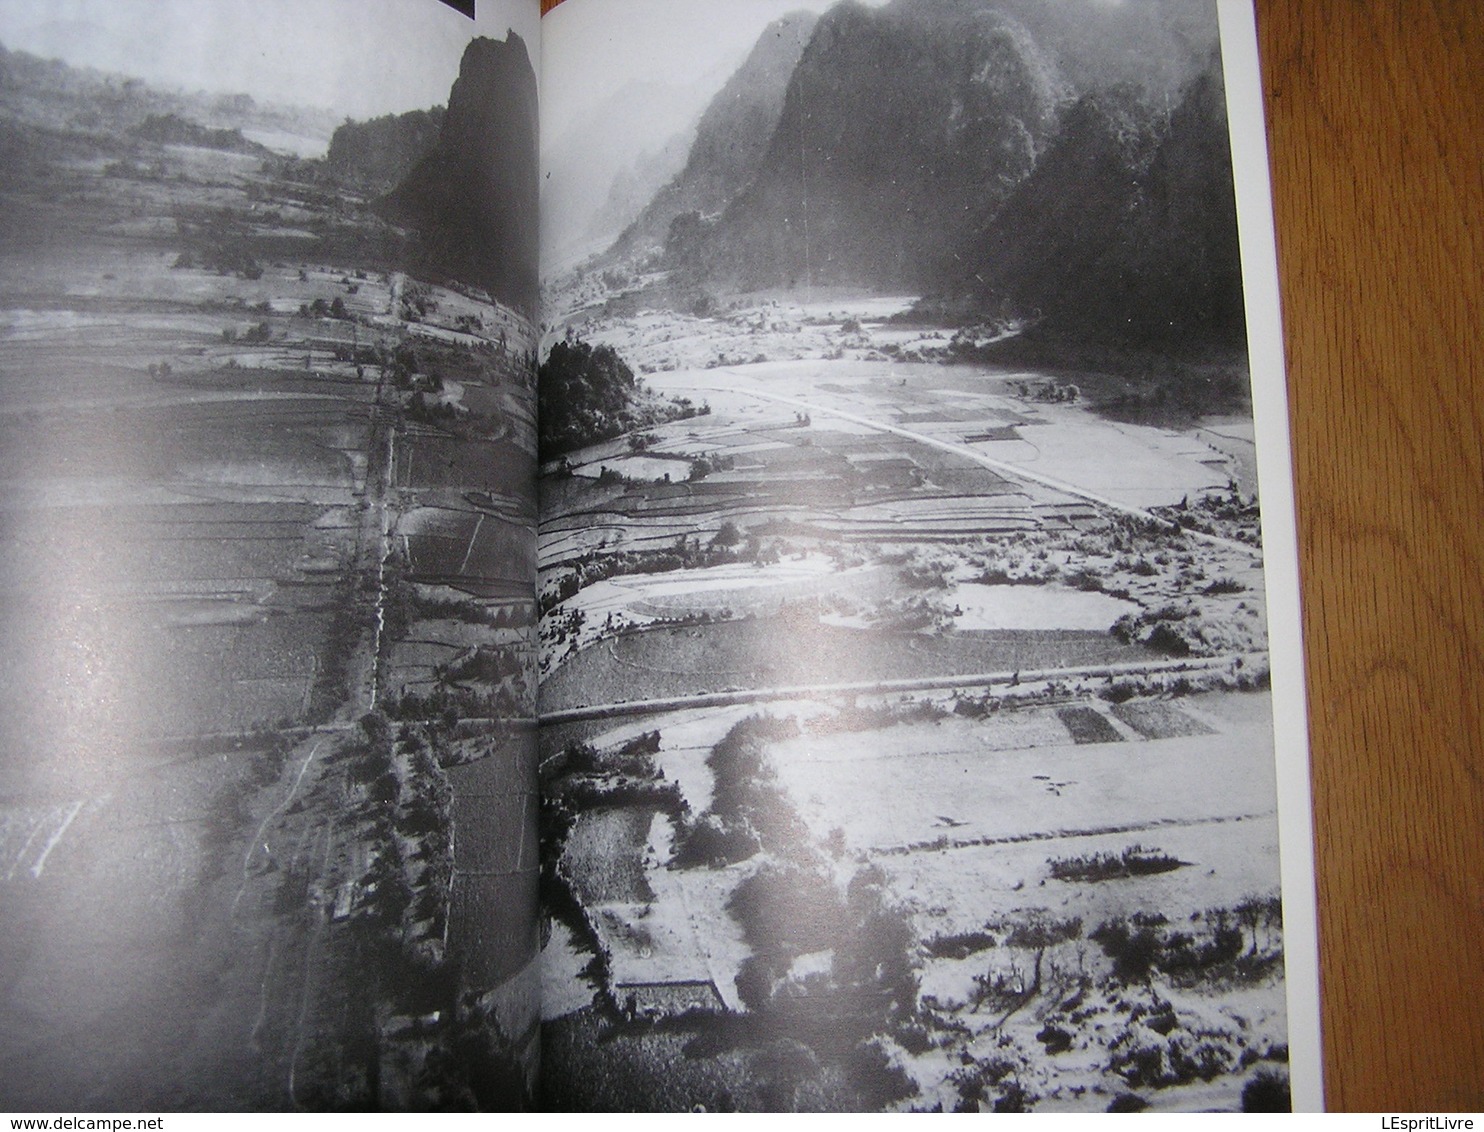 INDOCHINE 1945 1954 4 Le Tournant Laos Vietminh RC 4 Route 2 ème DB Para Commandos Asie Armée Française Parachutiste